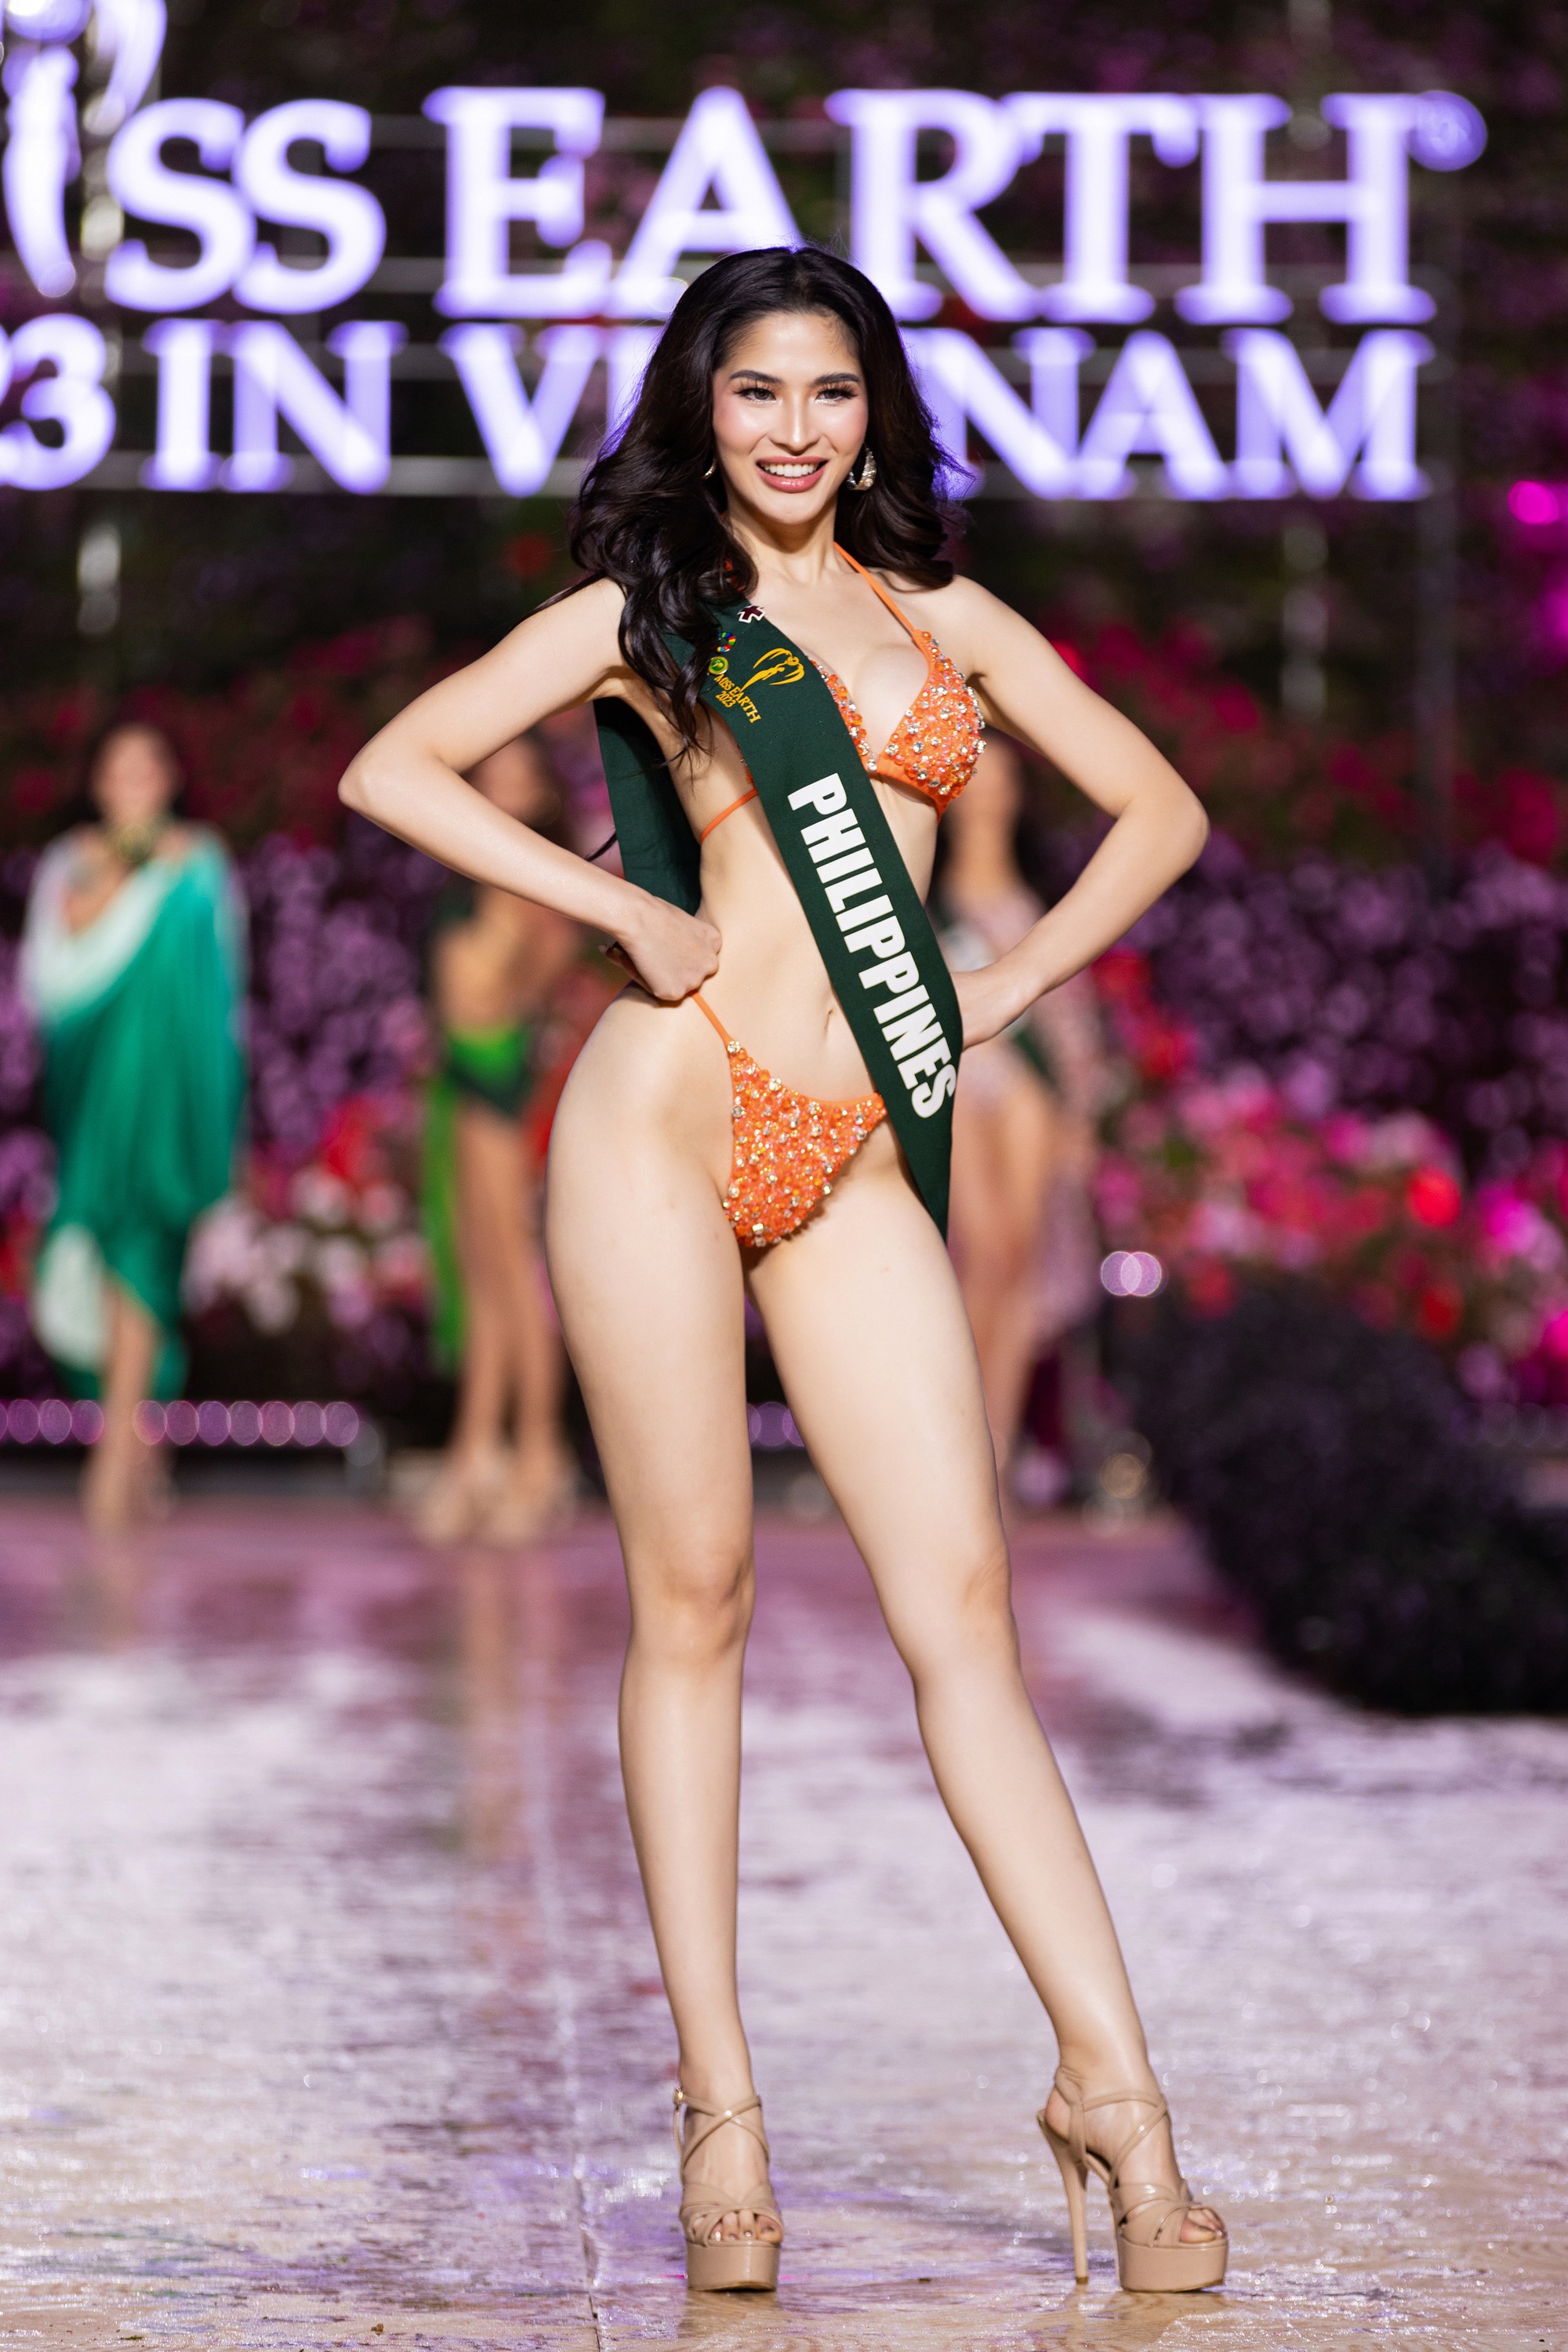 Dàn người đẹp Miss Earth 2023 khoe dáng nóng bỏng với bikini dưới trời lạnh 15 độ - Ảnh 14.